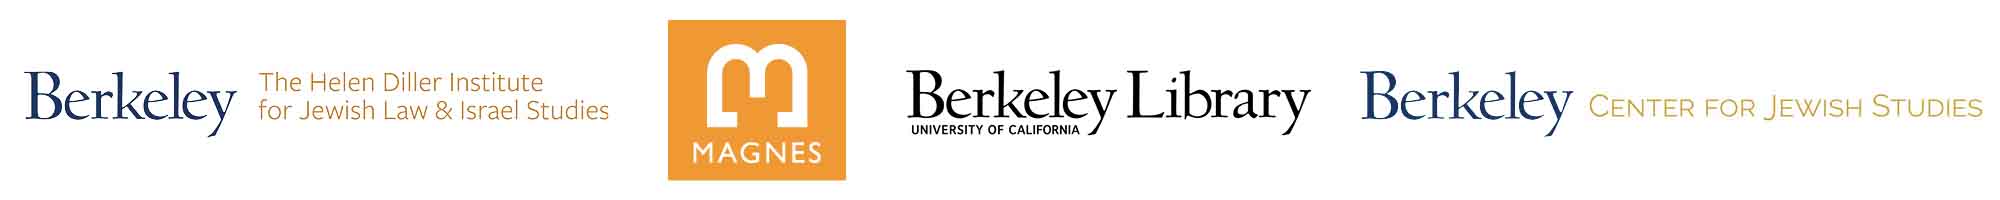 UC Berkeley Helen Diller Institute for Jewish Law & Israel Studies, Magnes, UC Berkeley Library, UC Berkeley Center for Jewish Studies